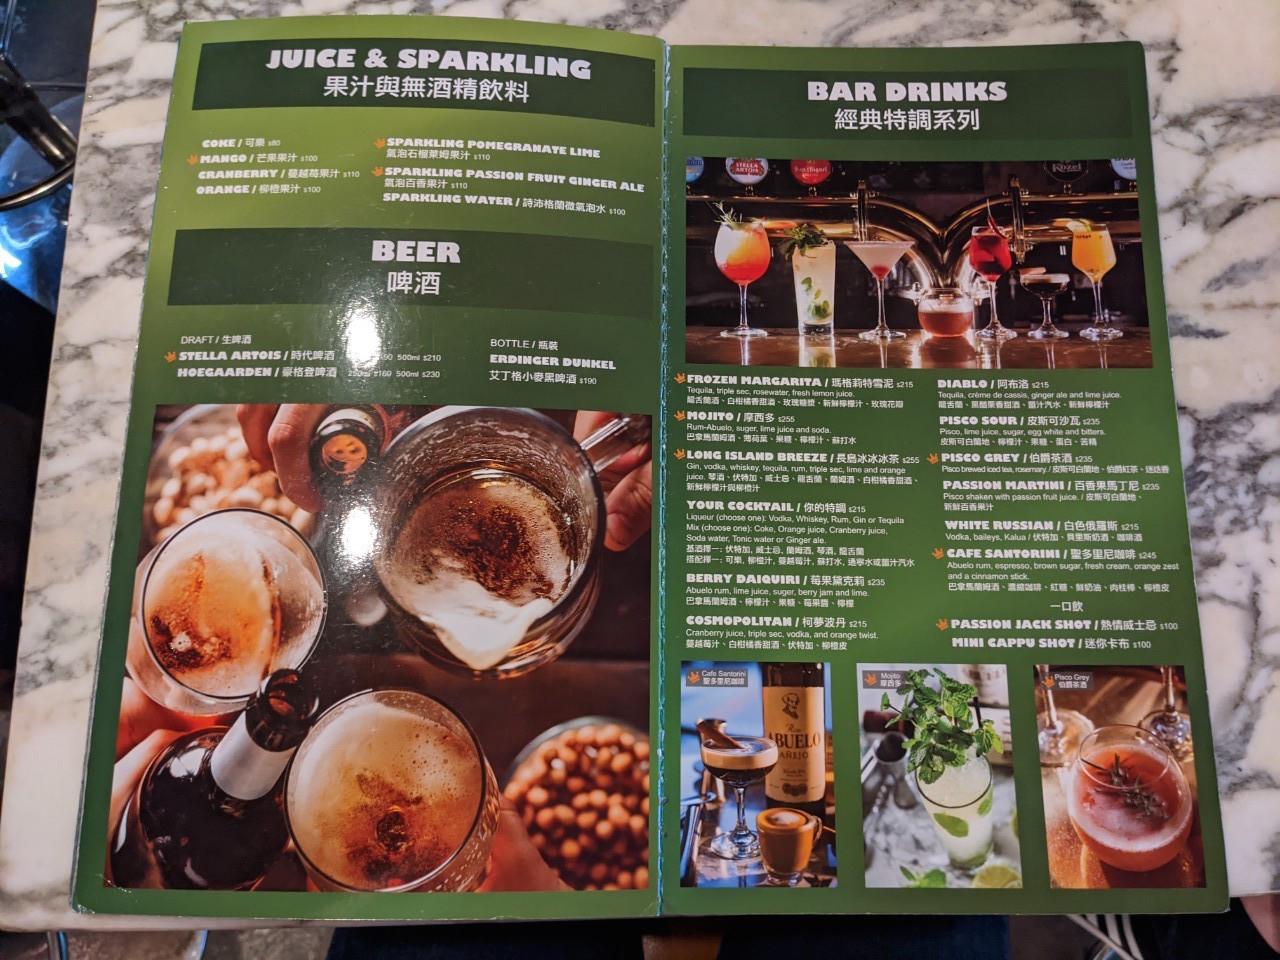 台北東區地中海料理餐廳-TOASTERiA CAFE 吐司利亞